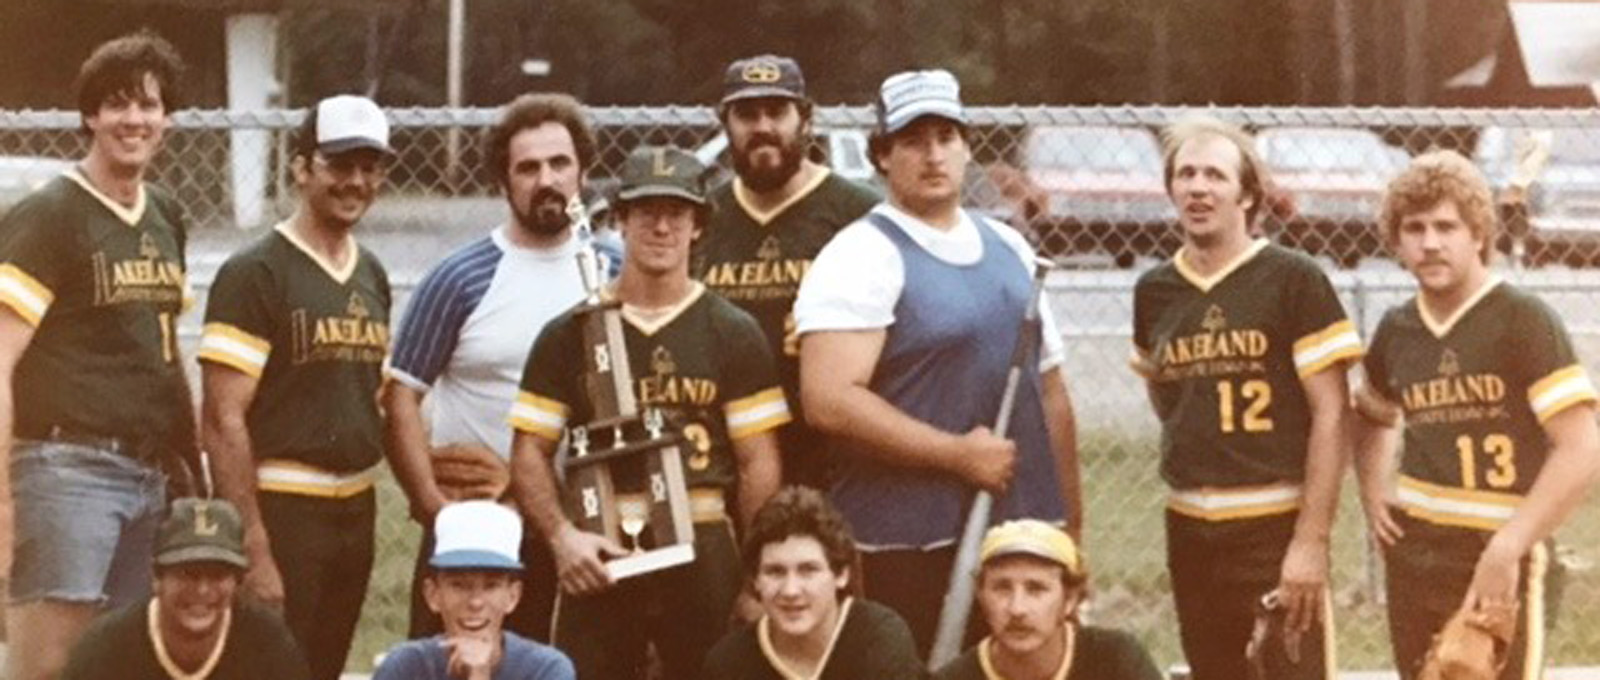 Lakeland State Bank Team 1984 1 1